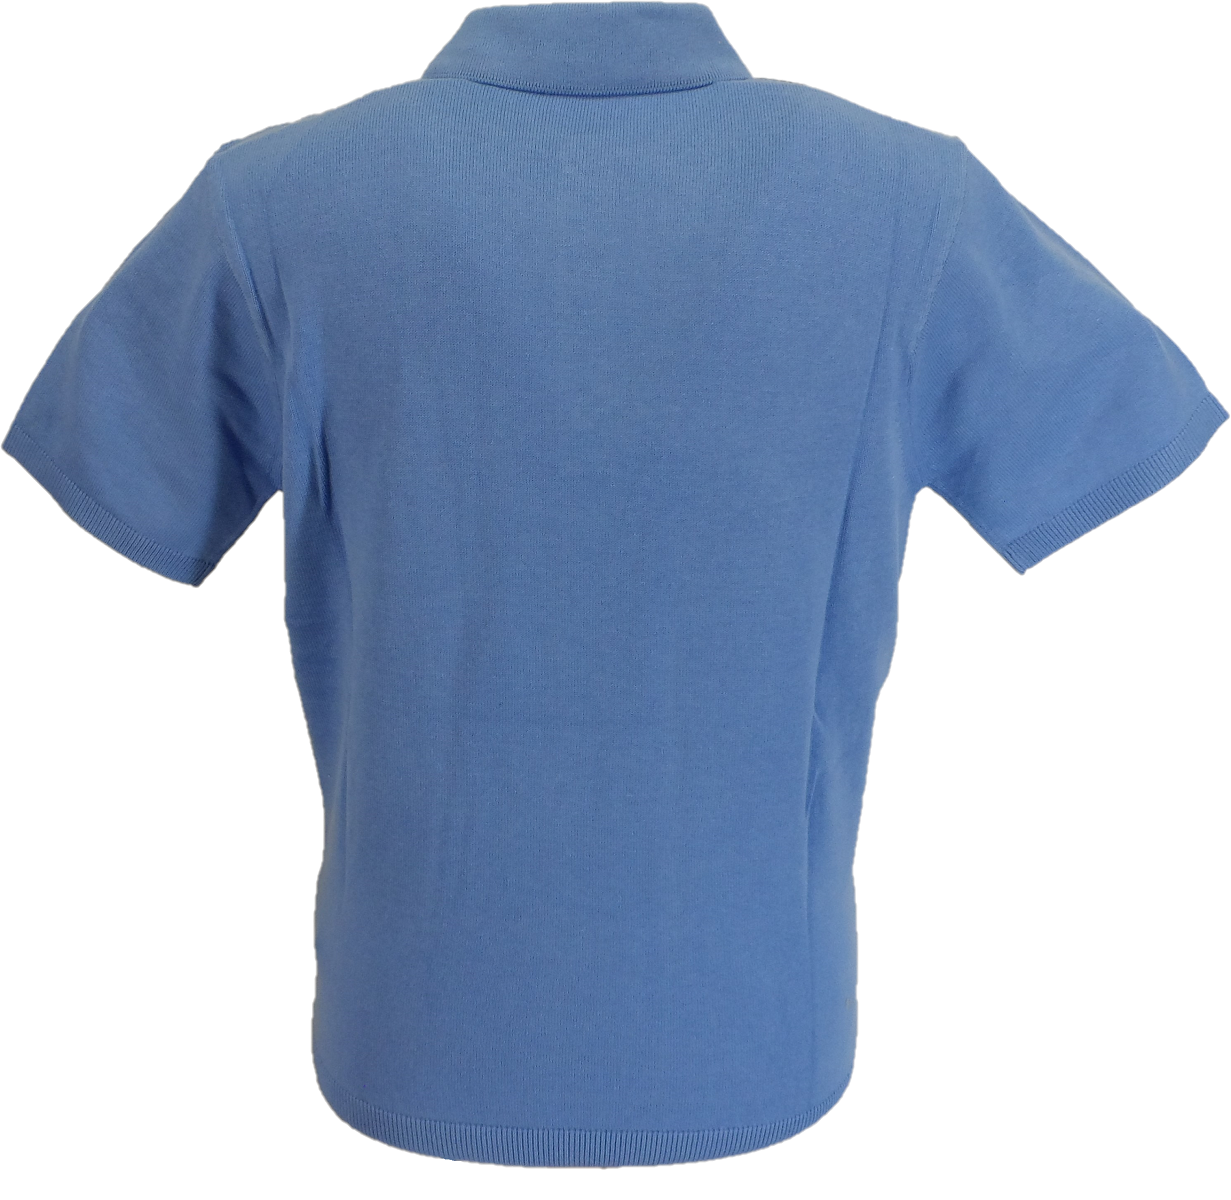 Gabicci Vintage polo tricoté à rayures marine bleu marine pour homme